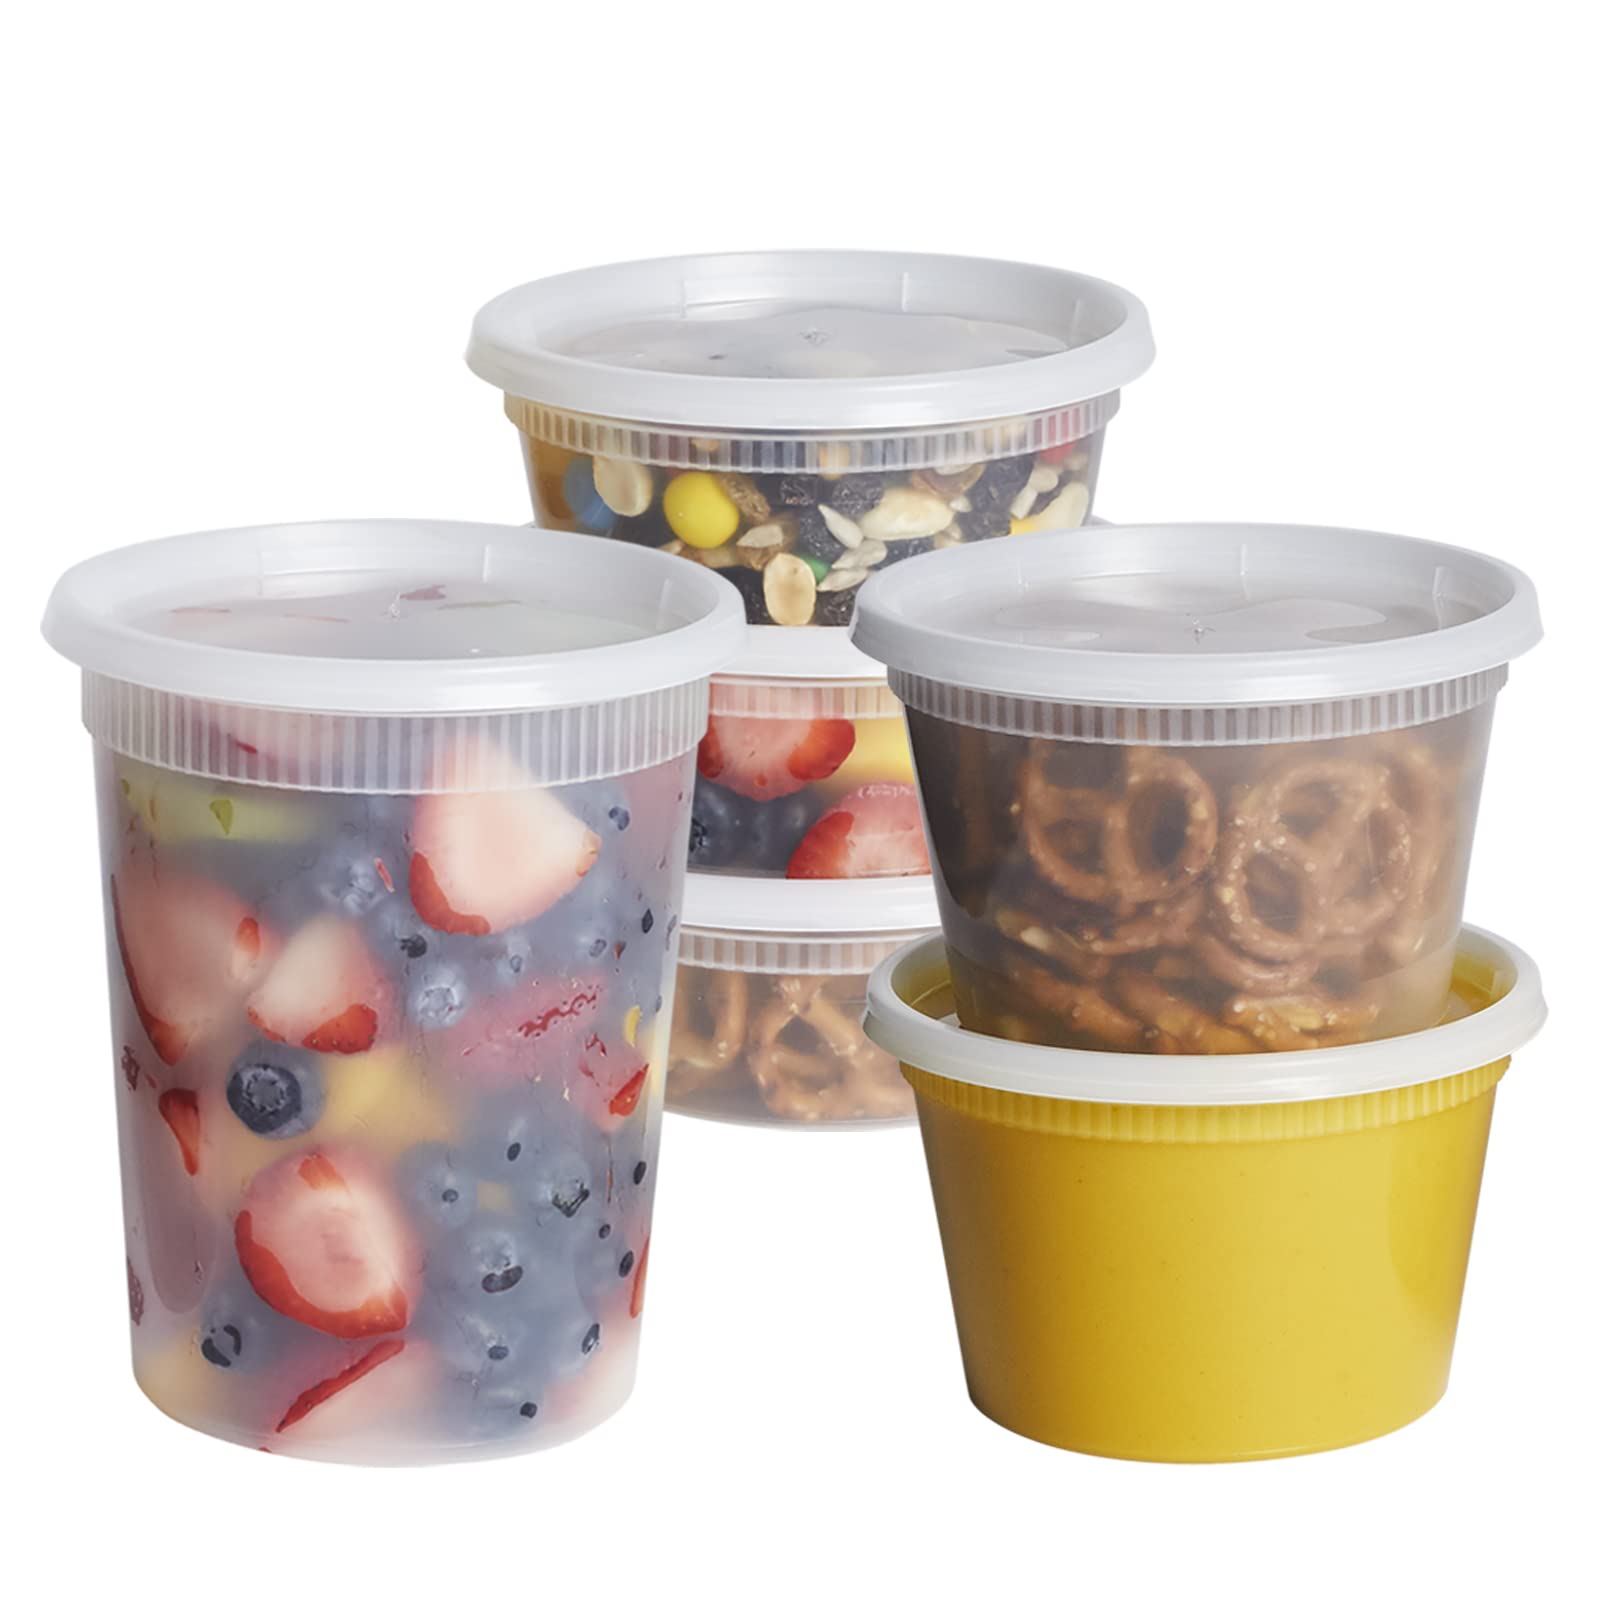 8oz Plastic Soup Container (240pcs)